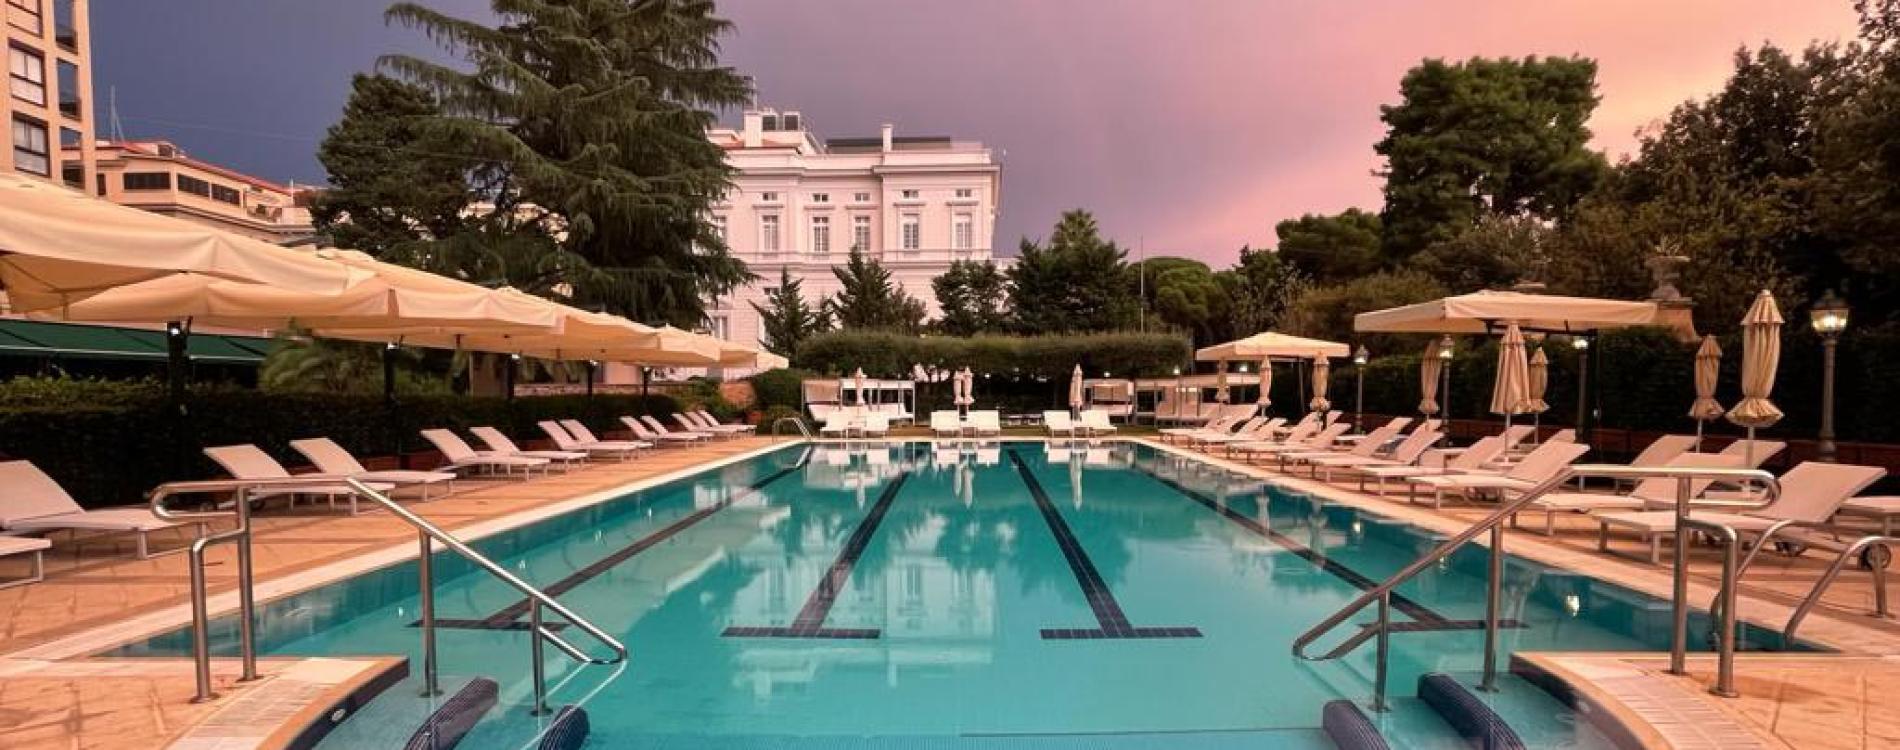 Parco dei Principi Grand Hotel & Spa, in Rome, Italy - Preferred Hotels &  Resorts